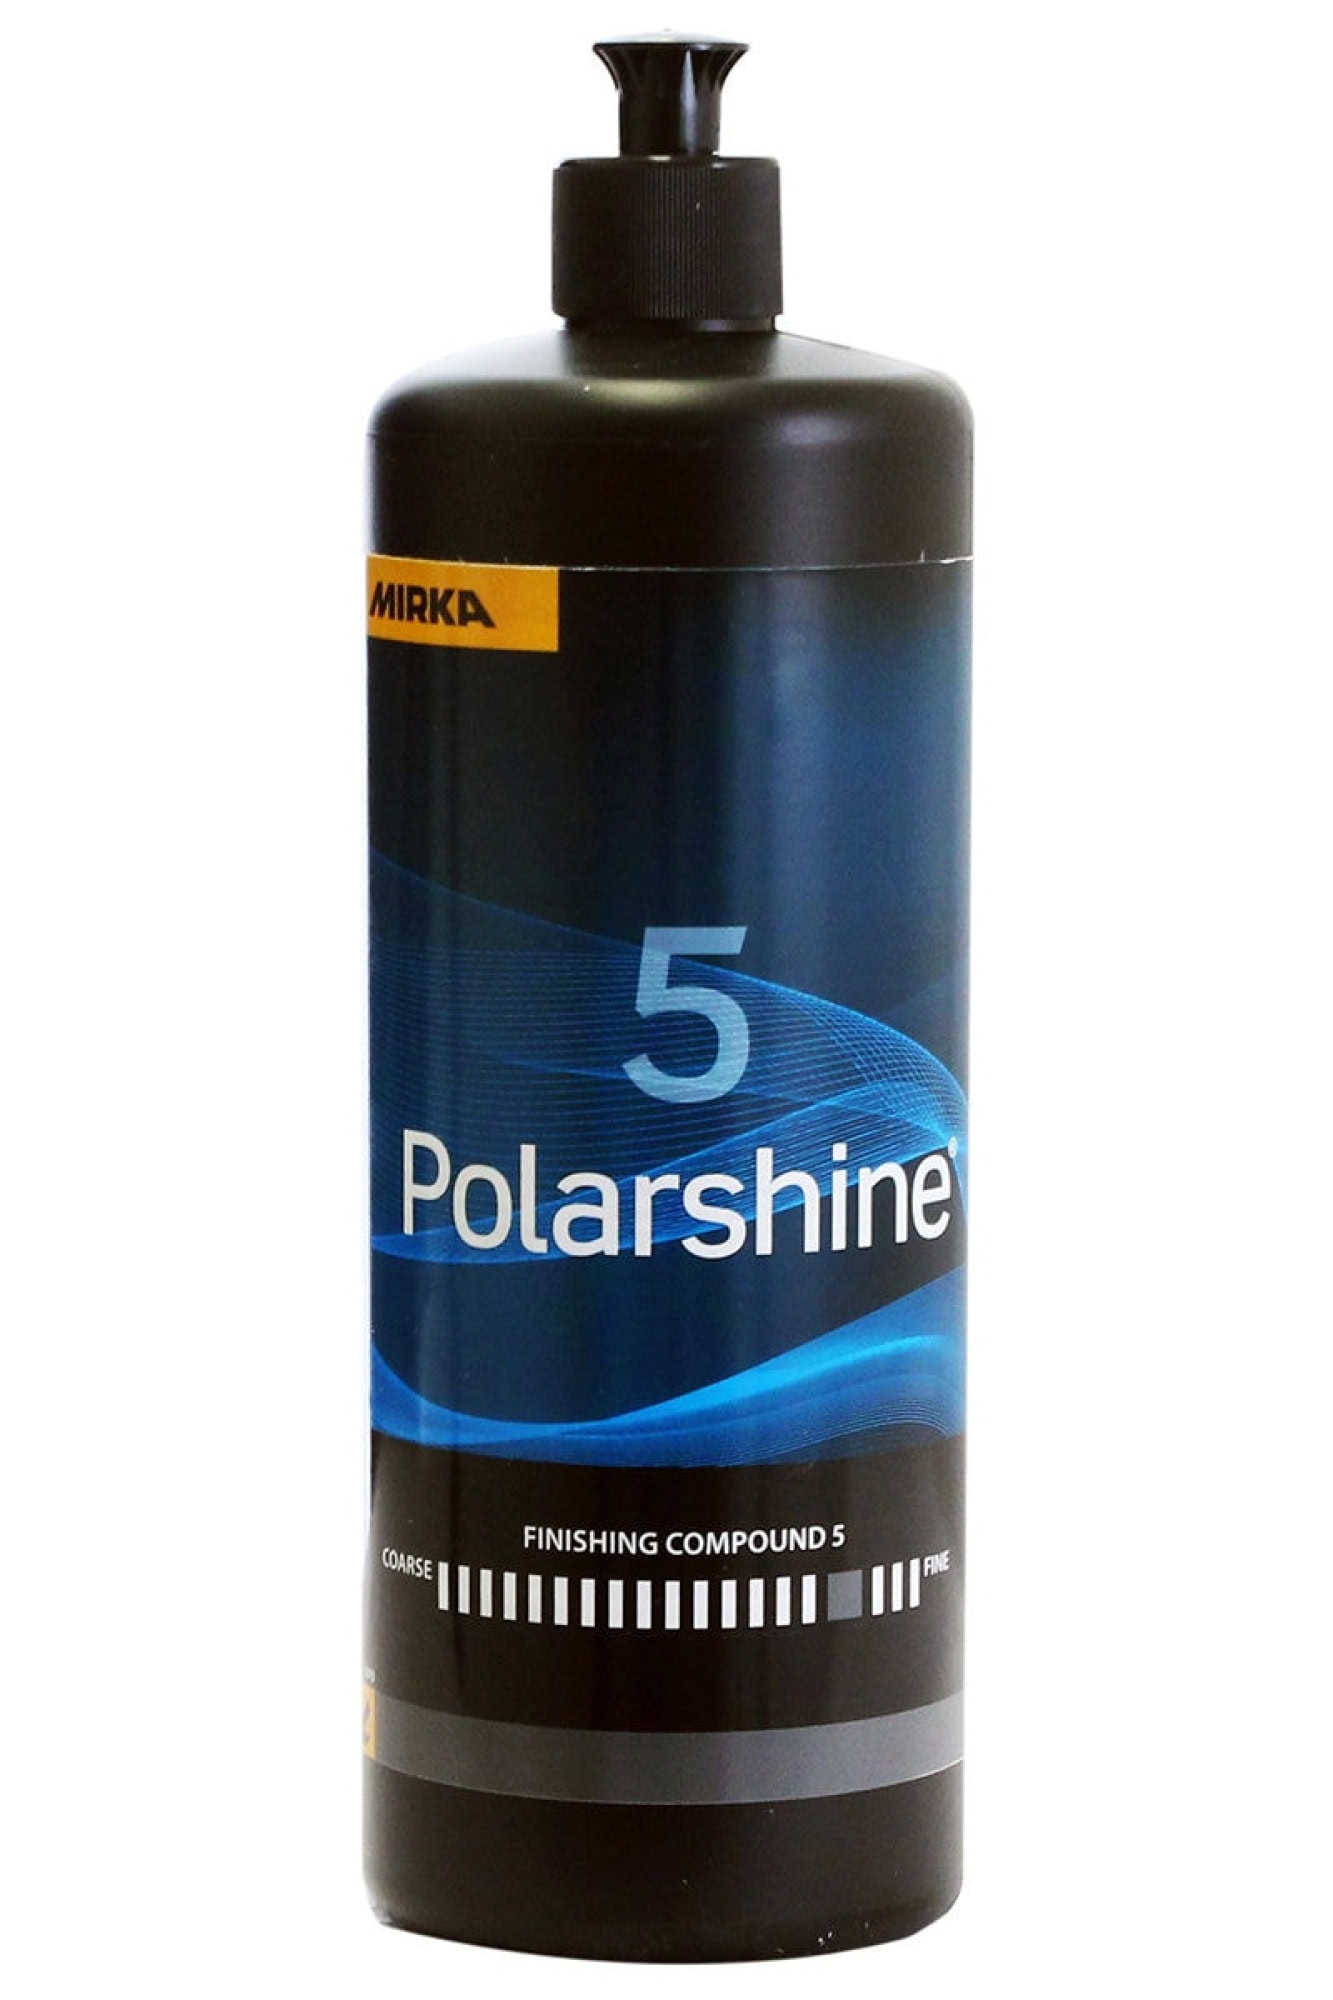 Mirka® Polarshine 5 7990500111, 1 Liter, Mittelfeine Politur zum Auffrischen von matten Oberflächen